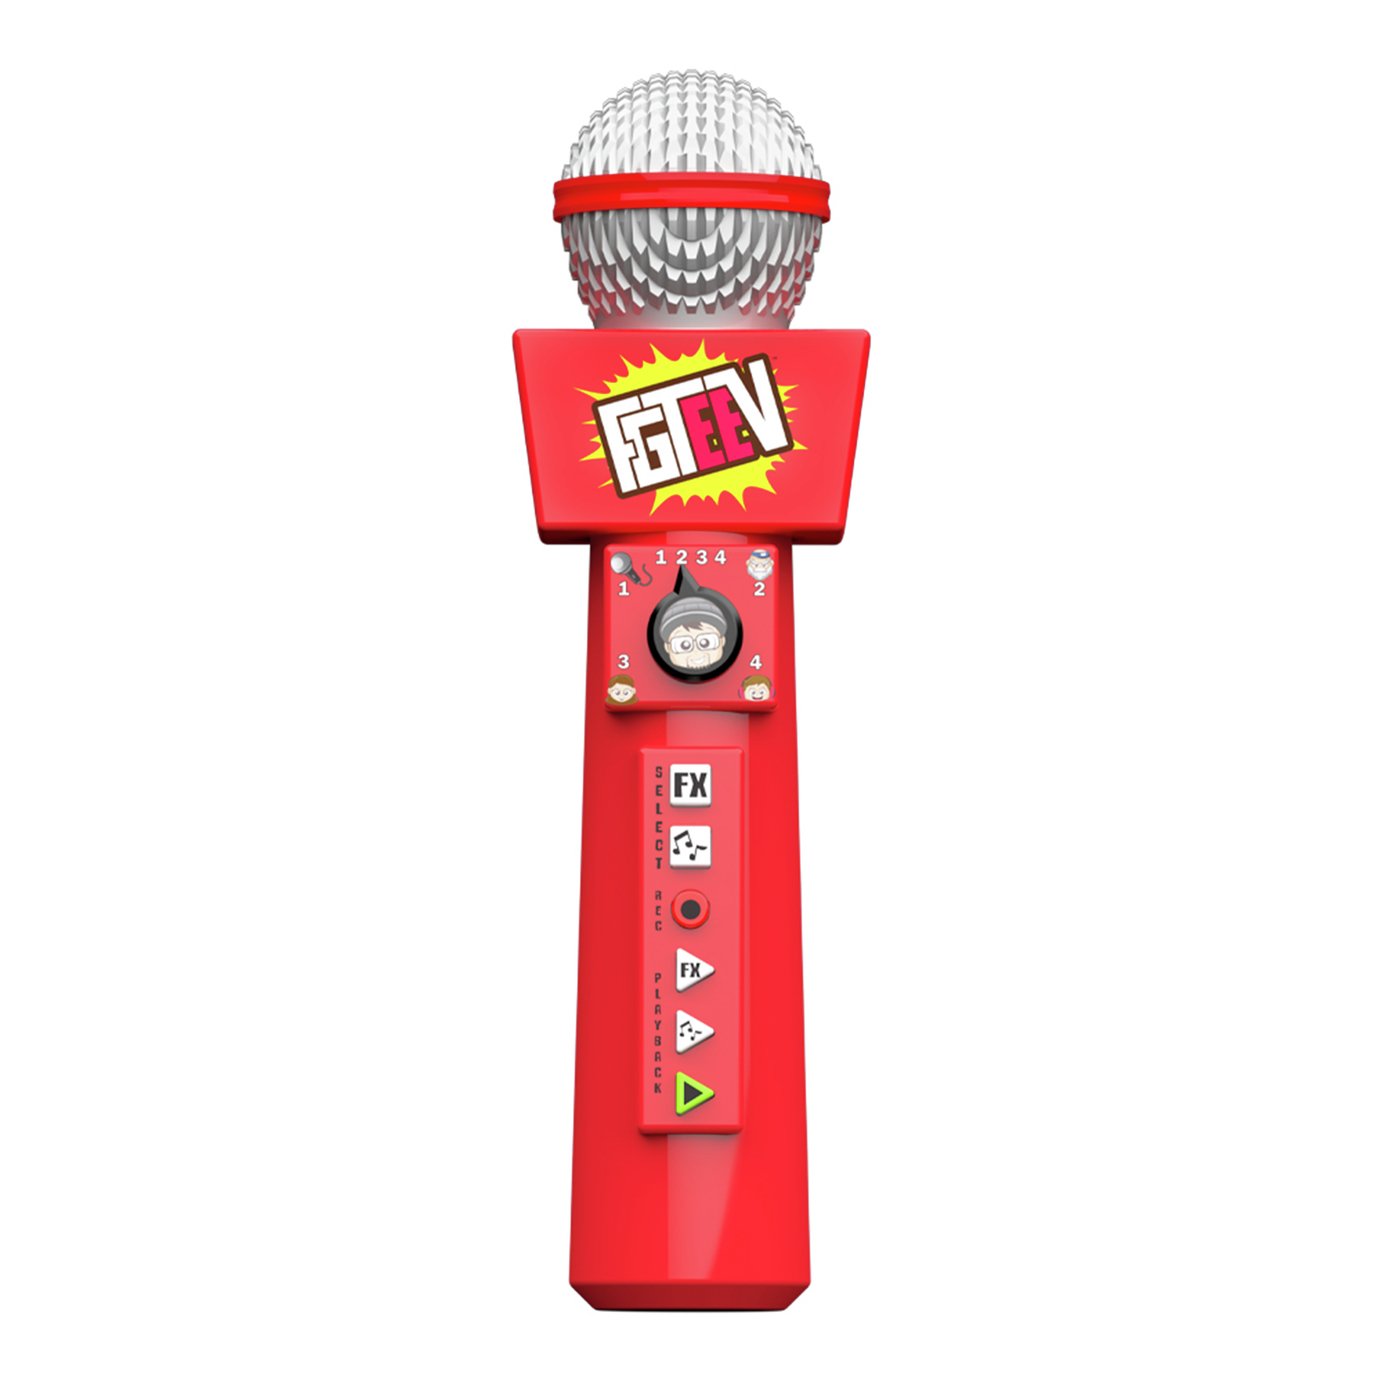 FGTeev Be Like FGTeev Microphone Review